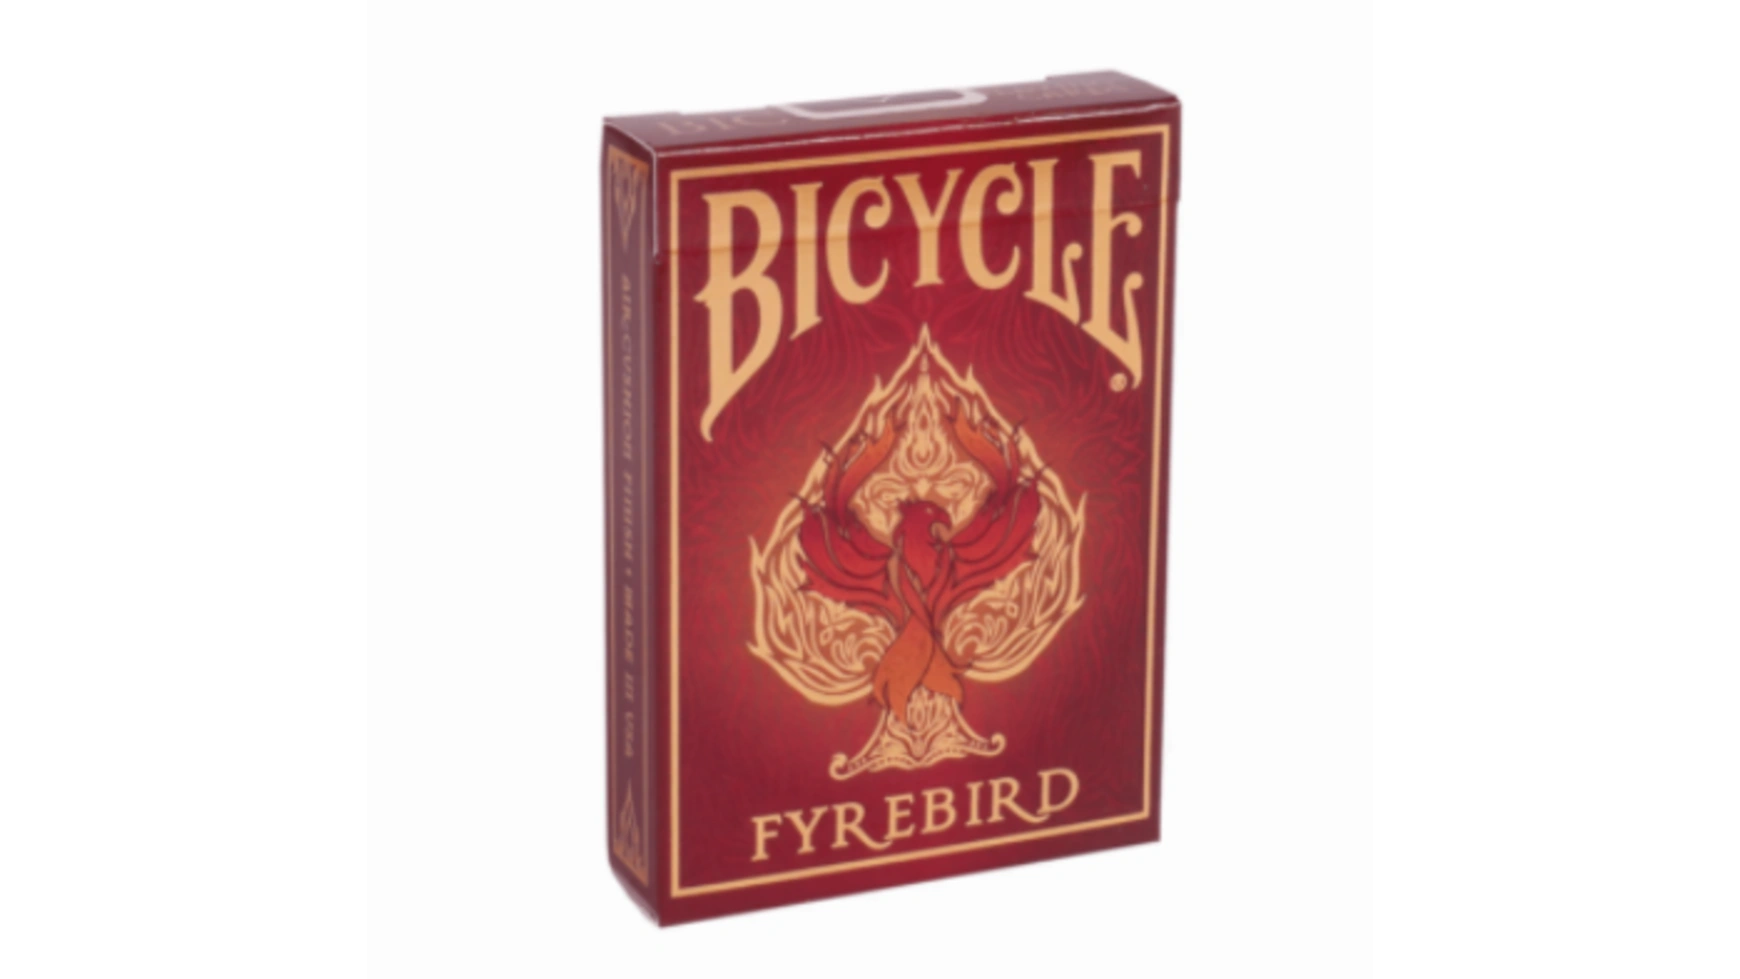 Bicycle игральные карты Fyrebird bicycle карты bicycle arch angels